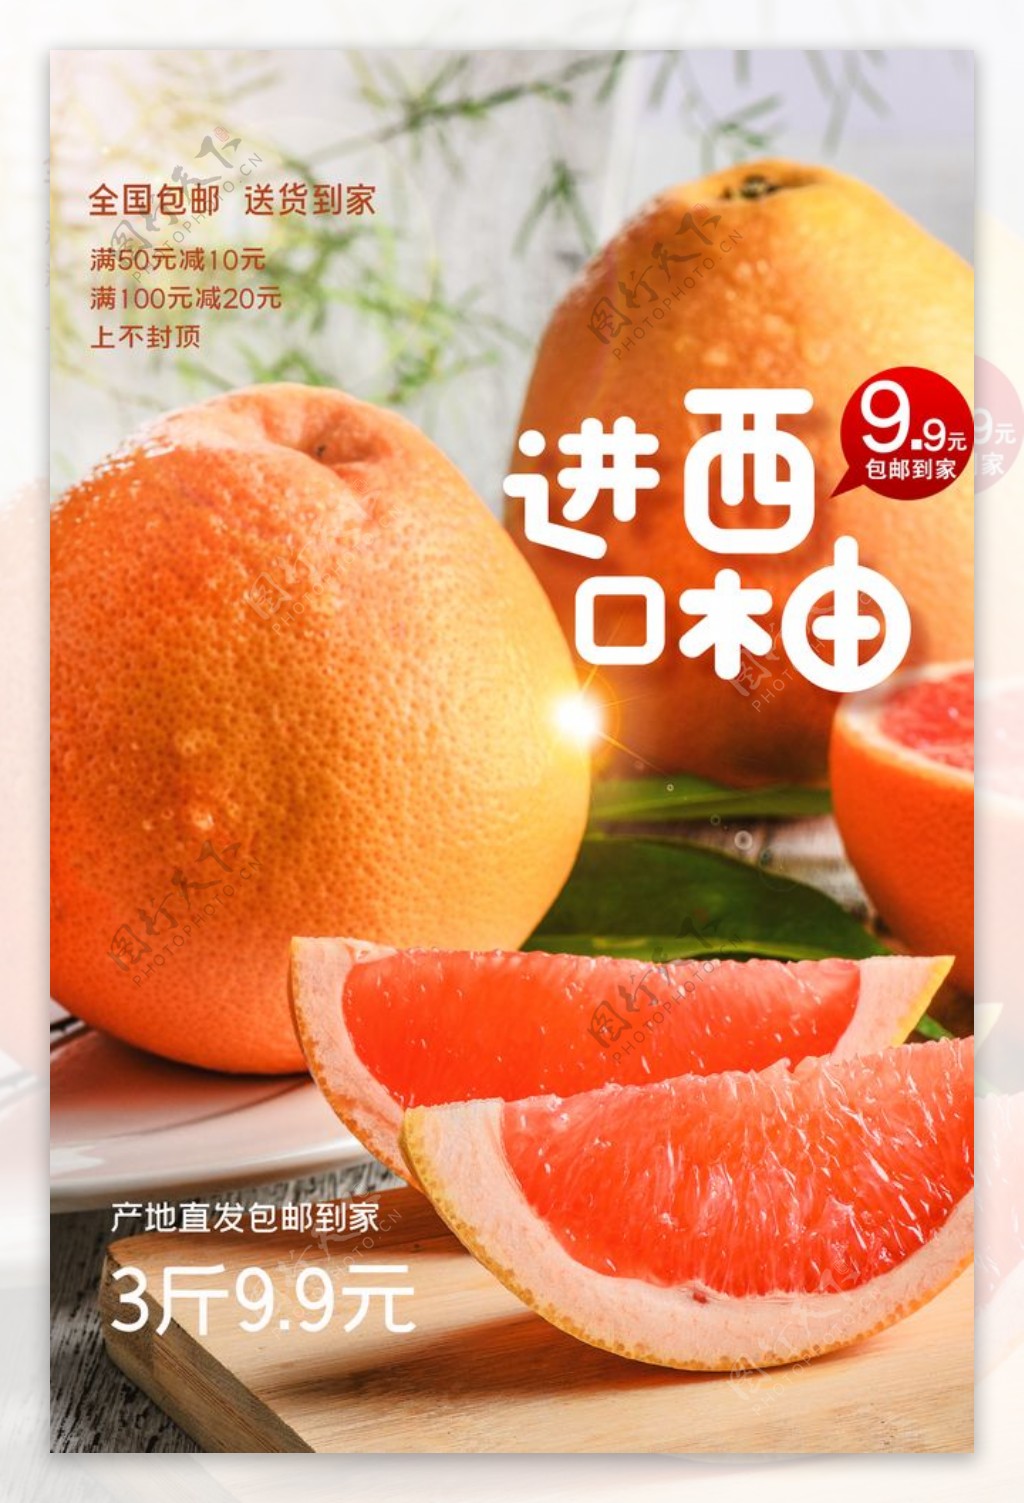 进口西柚水果活动宣传海报素材图片